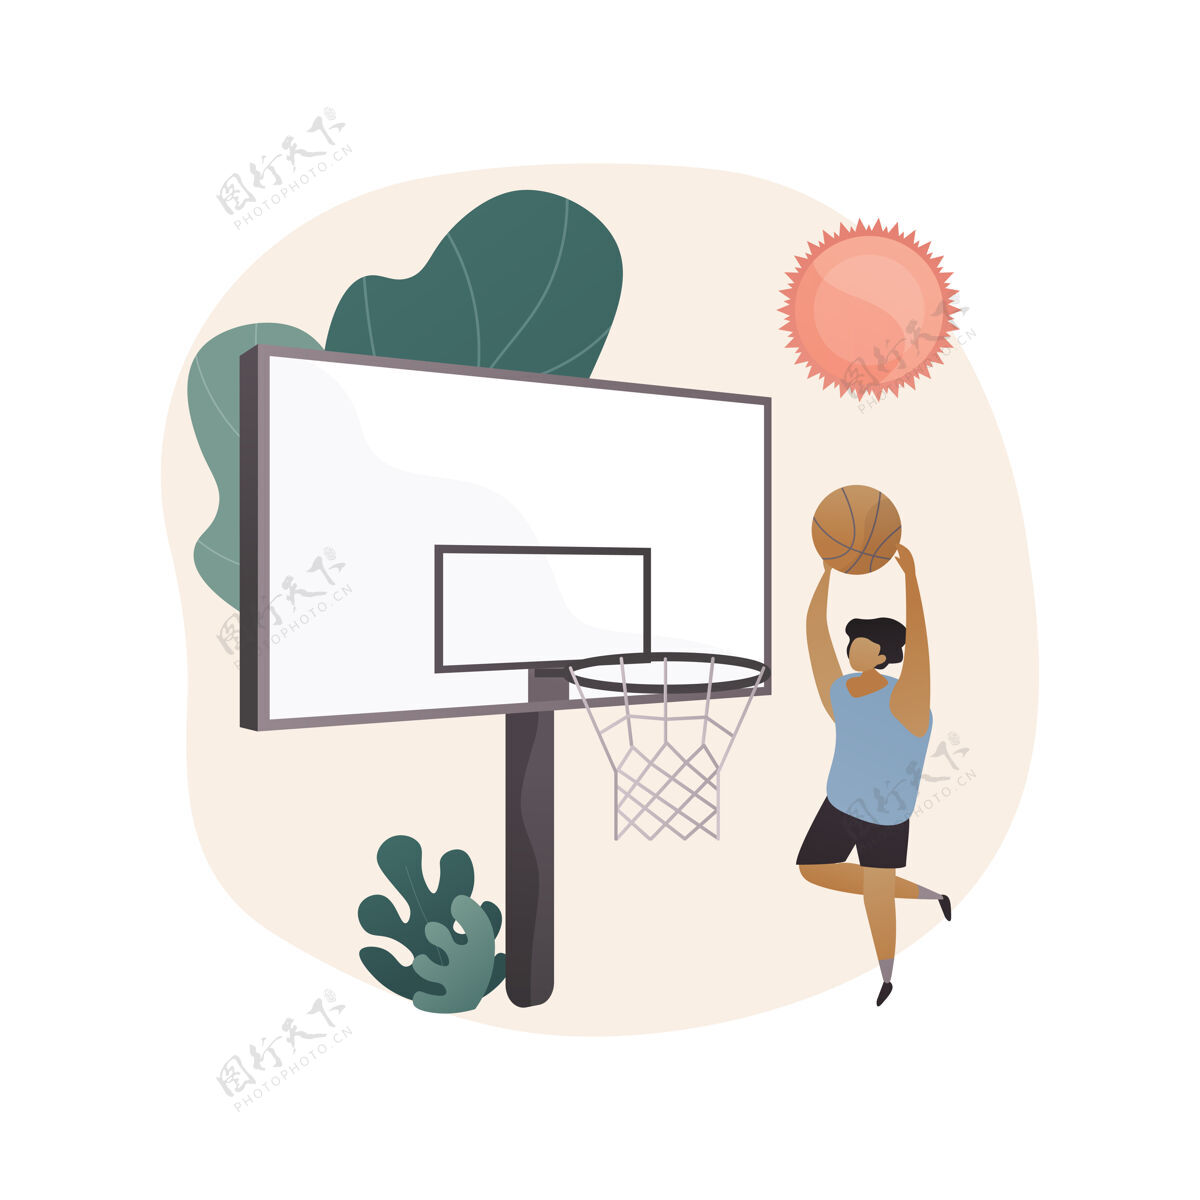 游戏篮球营抽象概念图孩子锦标赛娱乐